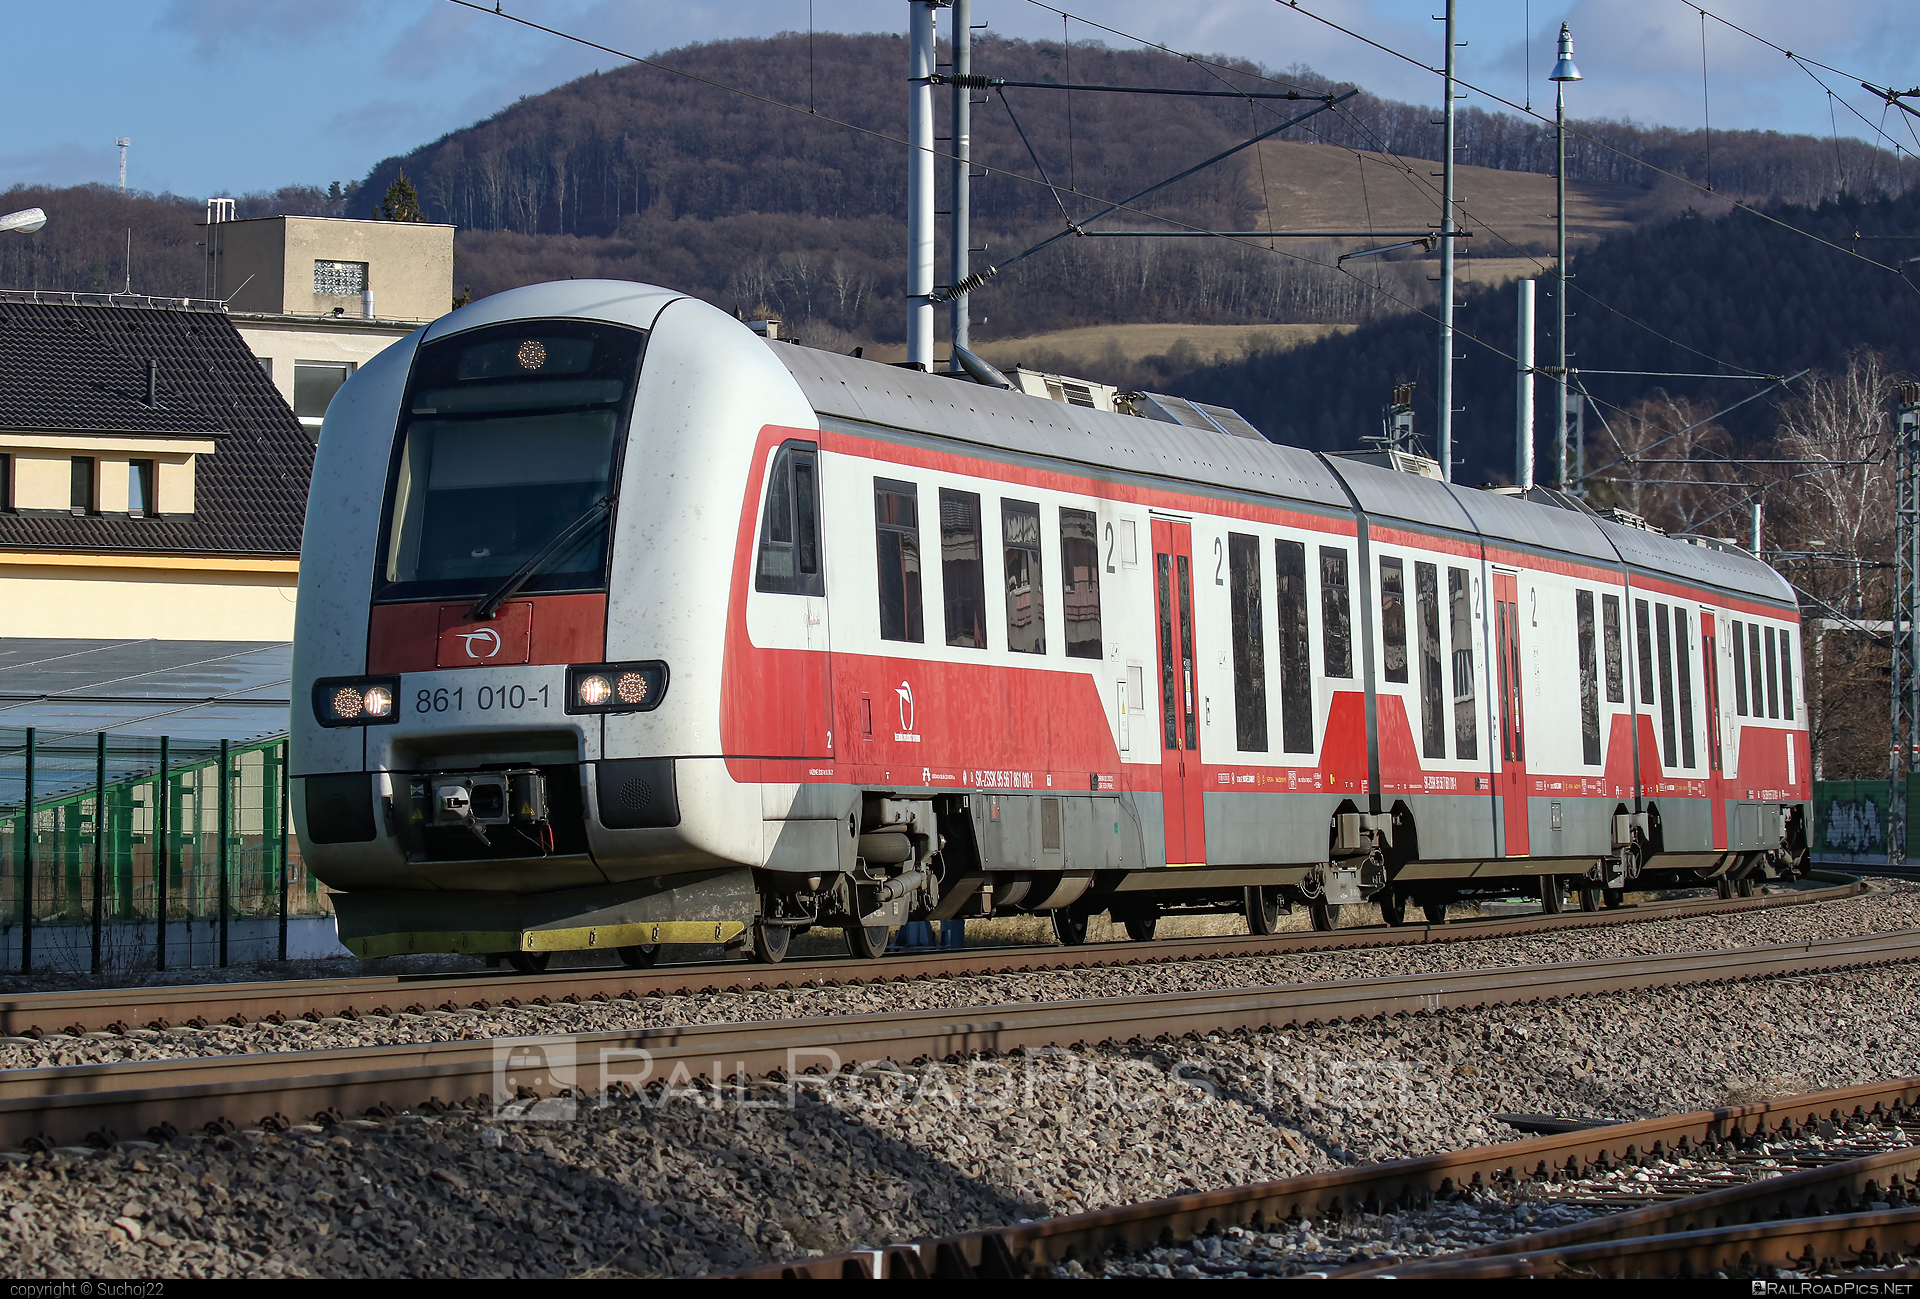 ŽOS Vrútky Class 861.0 - 861 010-1 operated by Železničná Spoločnost' Slovensko, a.s. #ZeleznicnaSpolocnostSlovensko #dunihlav #husenica #zosvrutky #zosvrutky861 #zosvrutky8610 #zssk #zssk861 #zssk8610